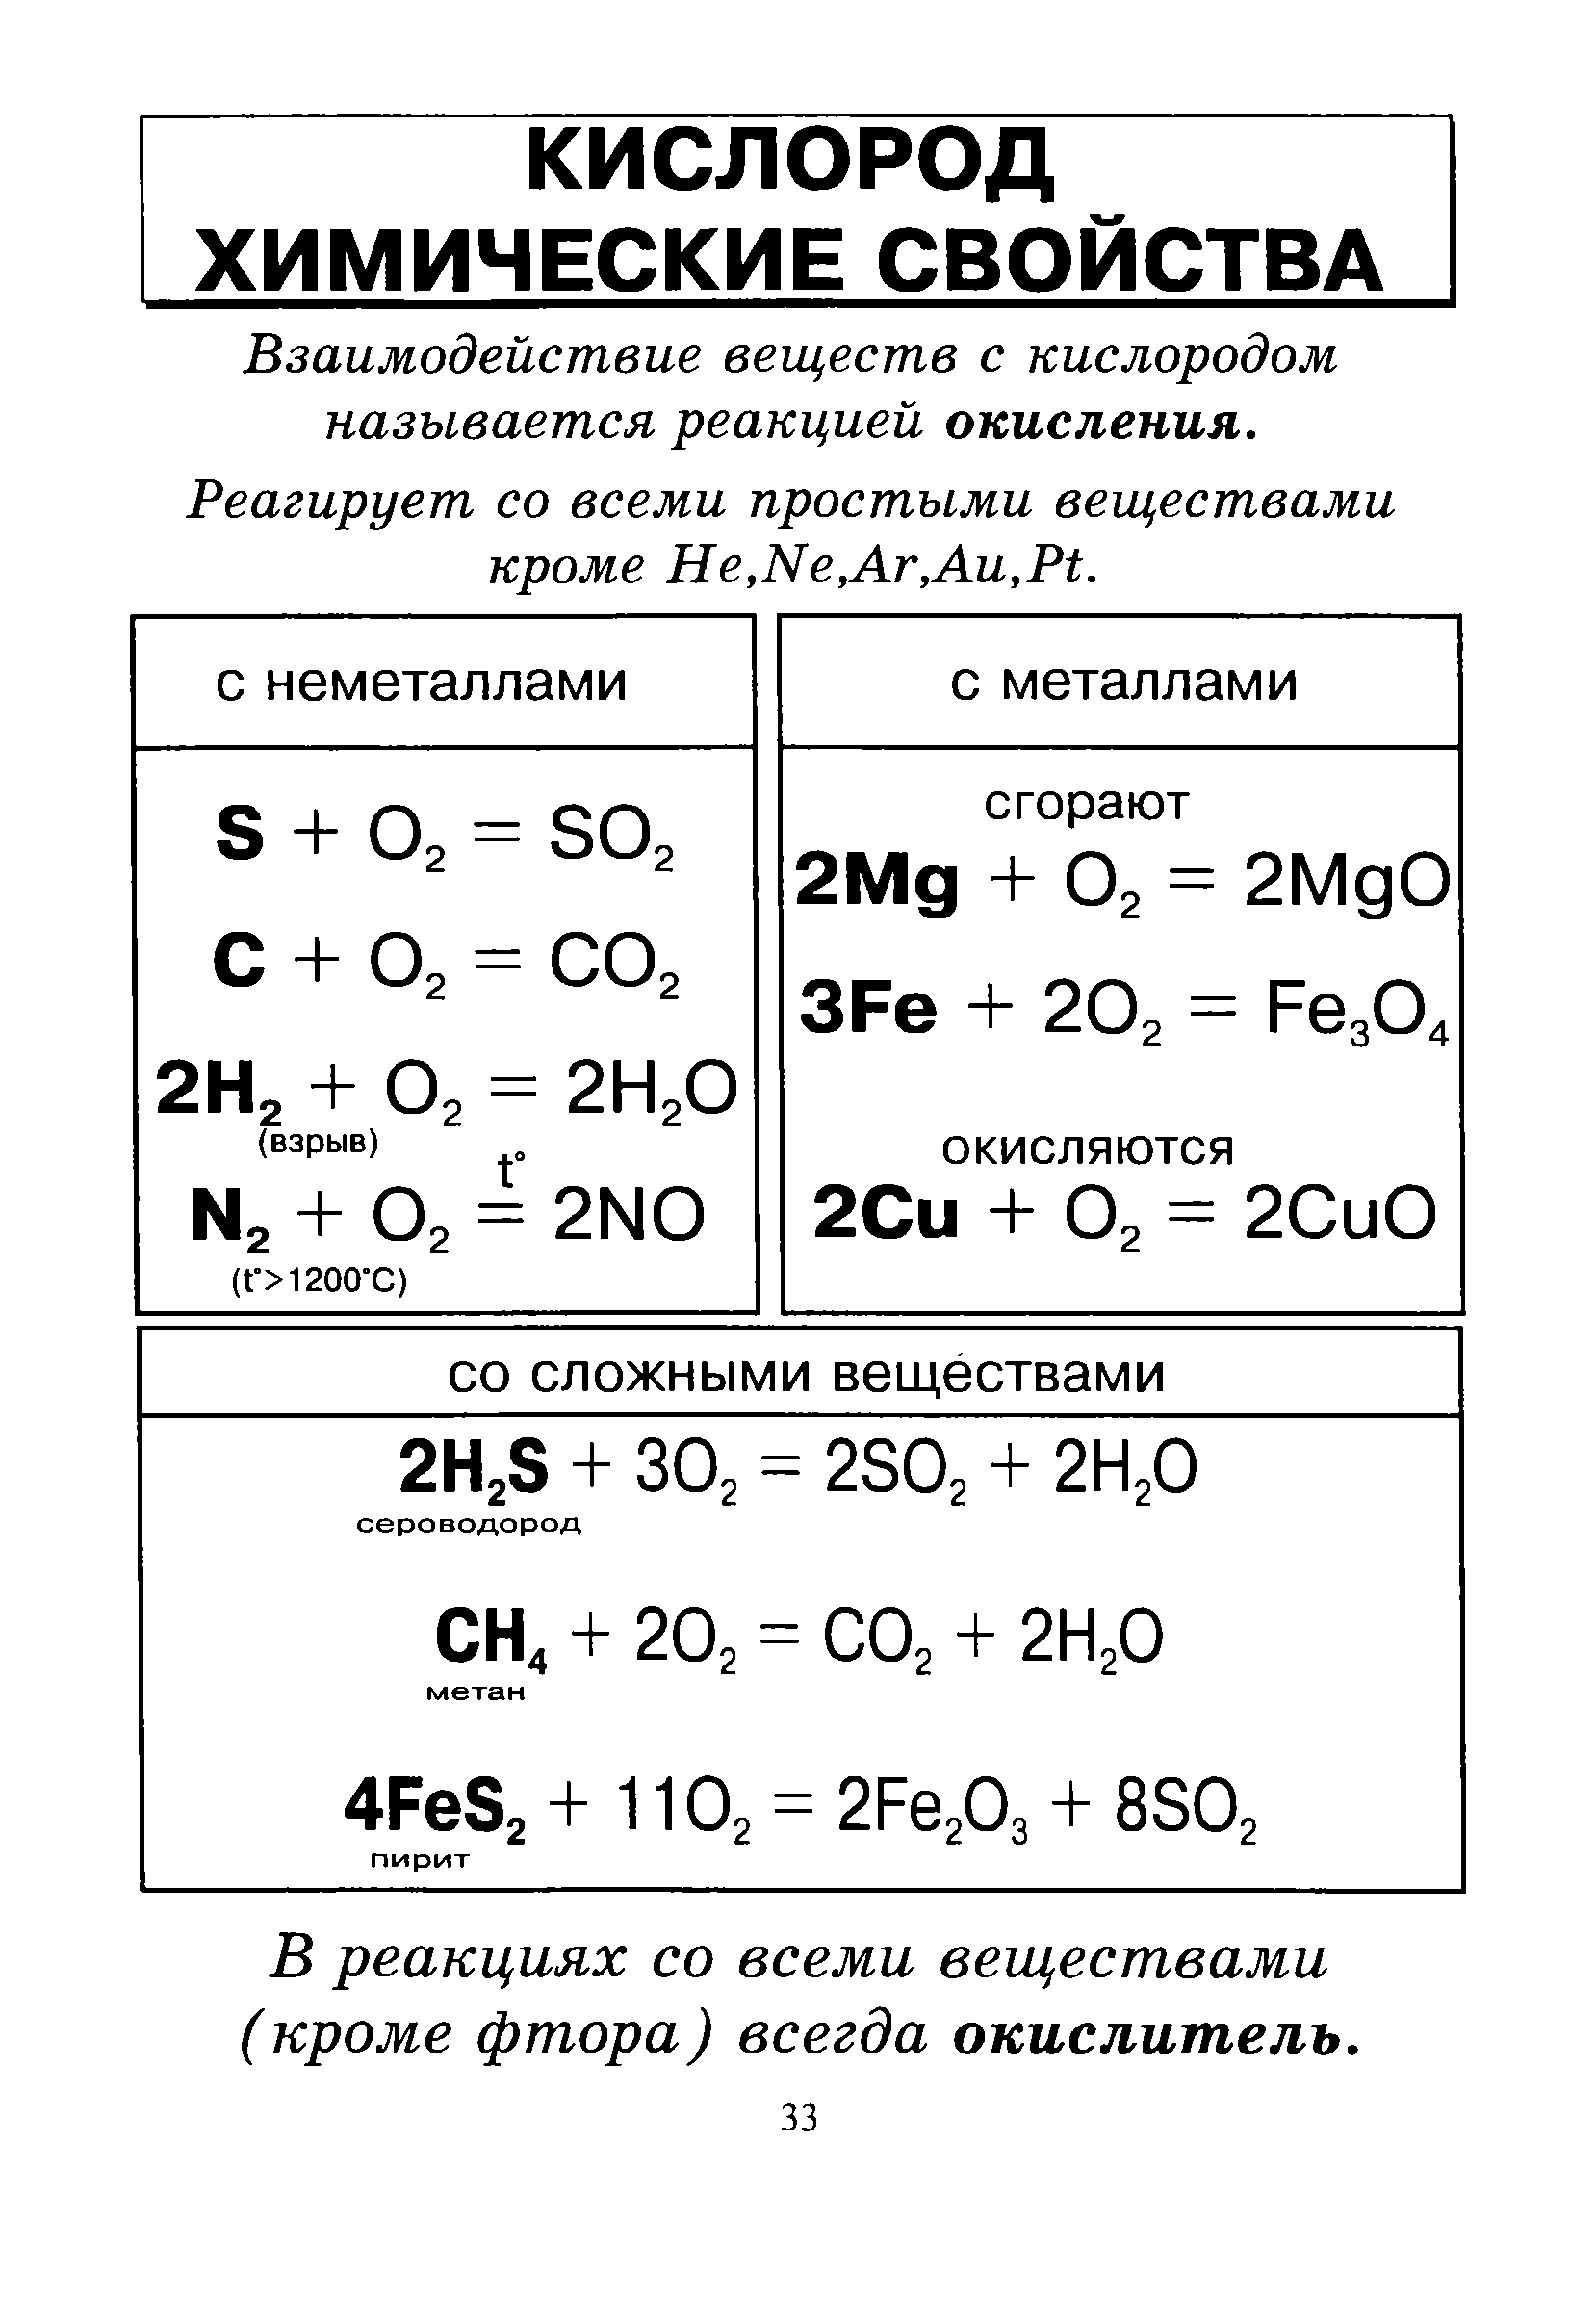 Тип элемента кислород. Химические свойства кислорода формулы. Химические свойства кислорода 8 класс. Химические свойства кислорода 8 класс химия таблица. Химические свойства кислорода 8 класс химия.